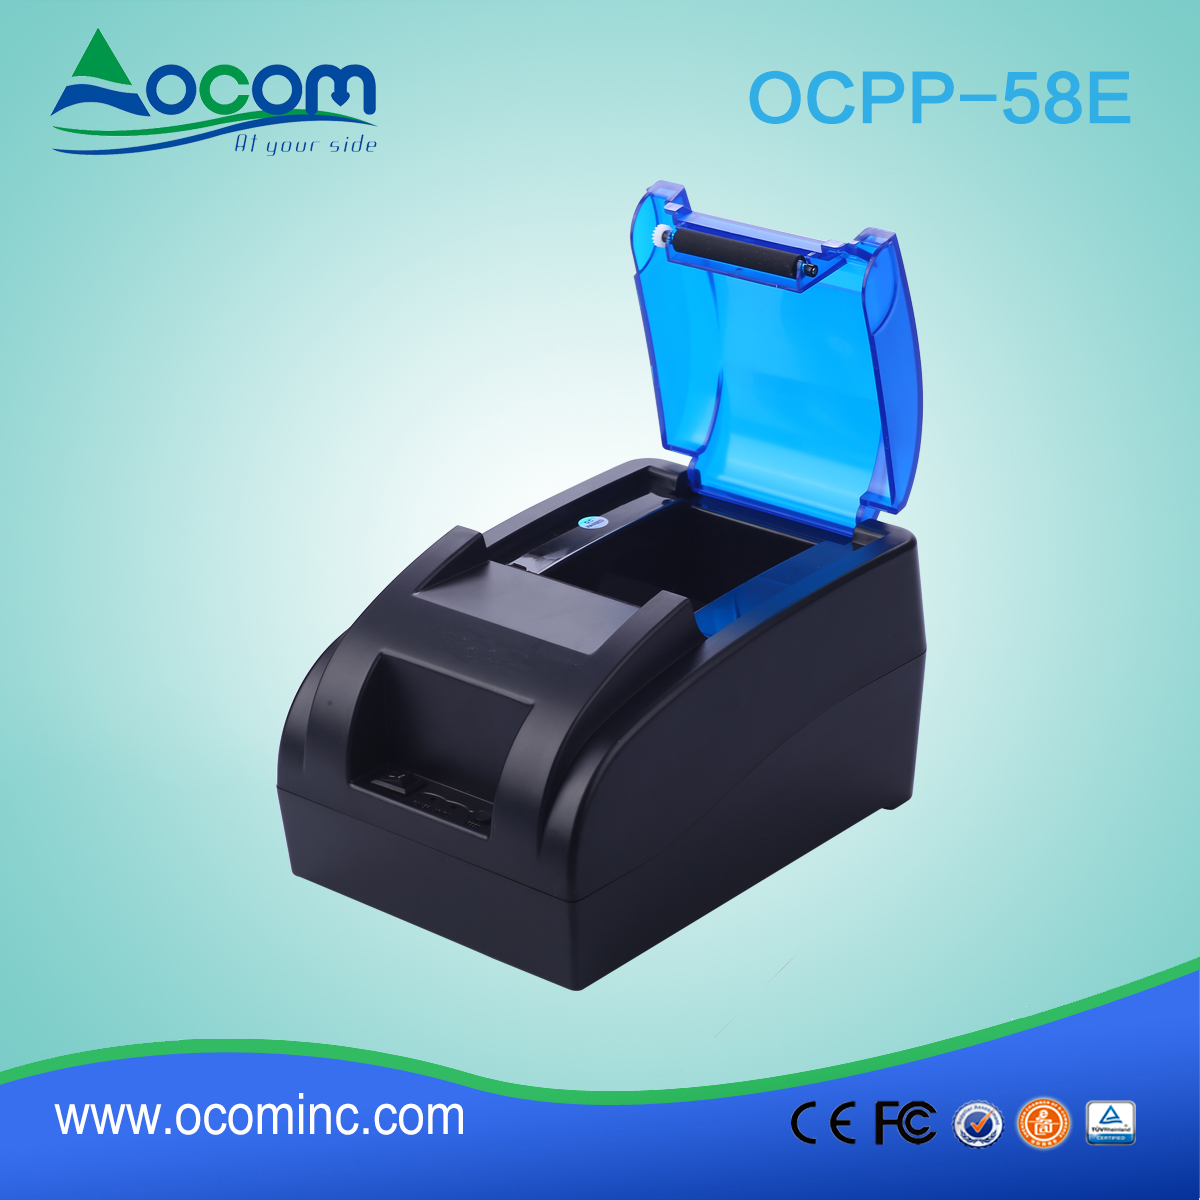 Θερμικός εκτυπωτής απόδοσης 58 χιλιοστών OCPP-58E-BT Επικοινωνία Bluetooth